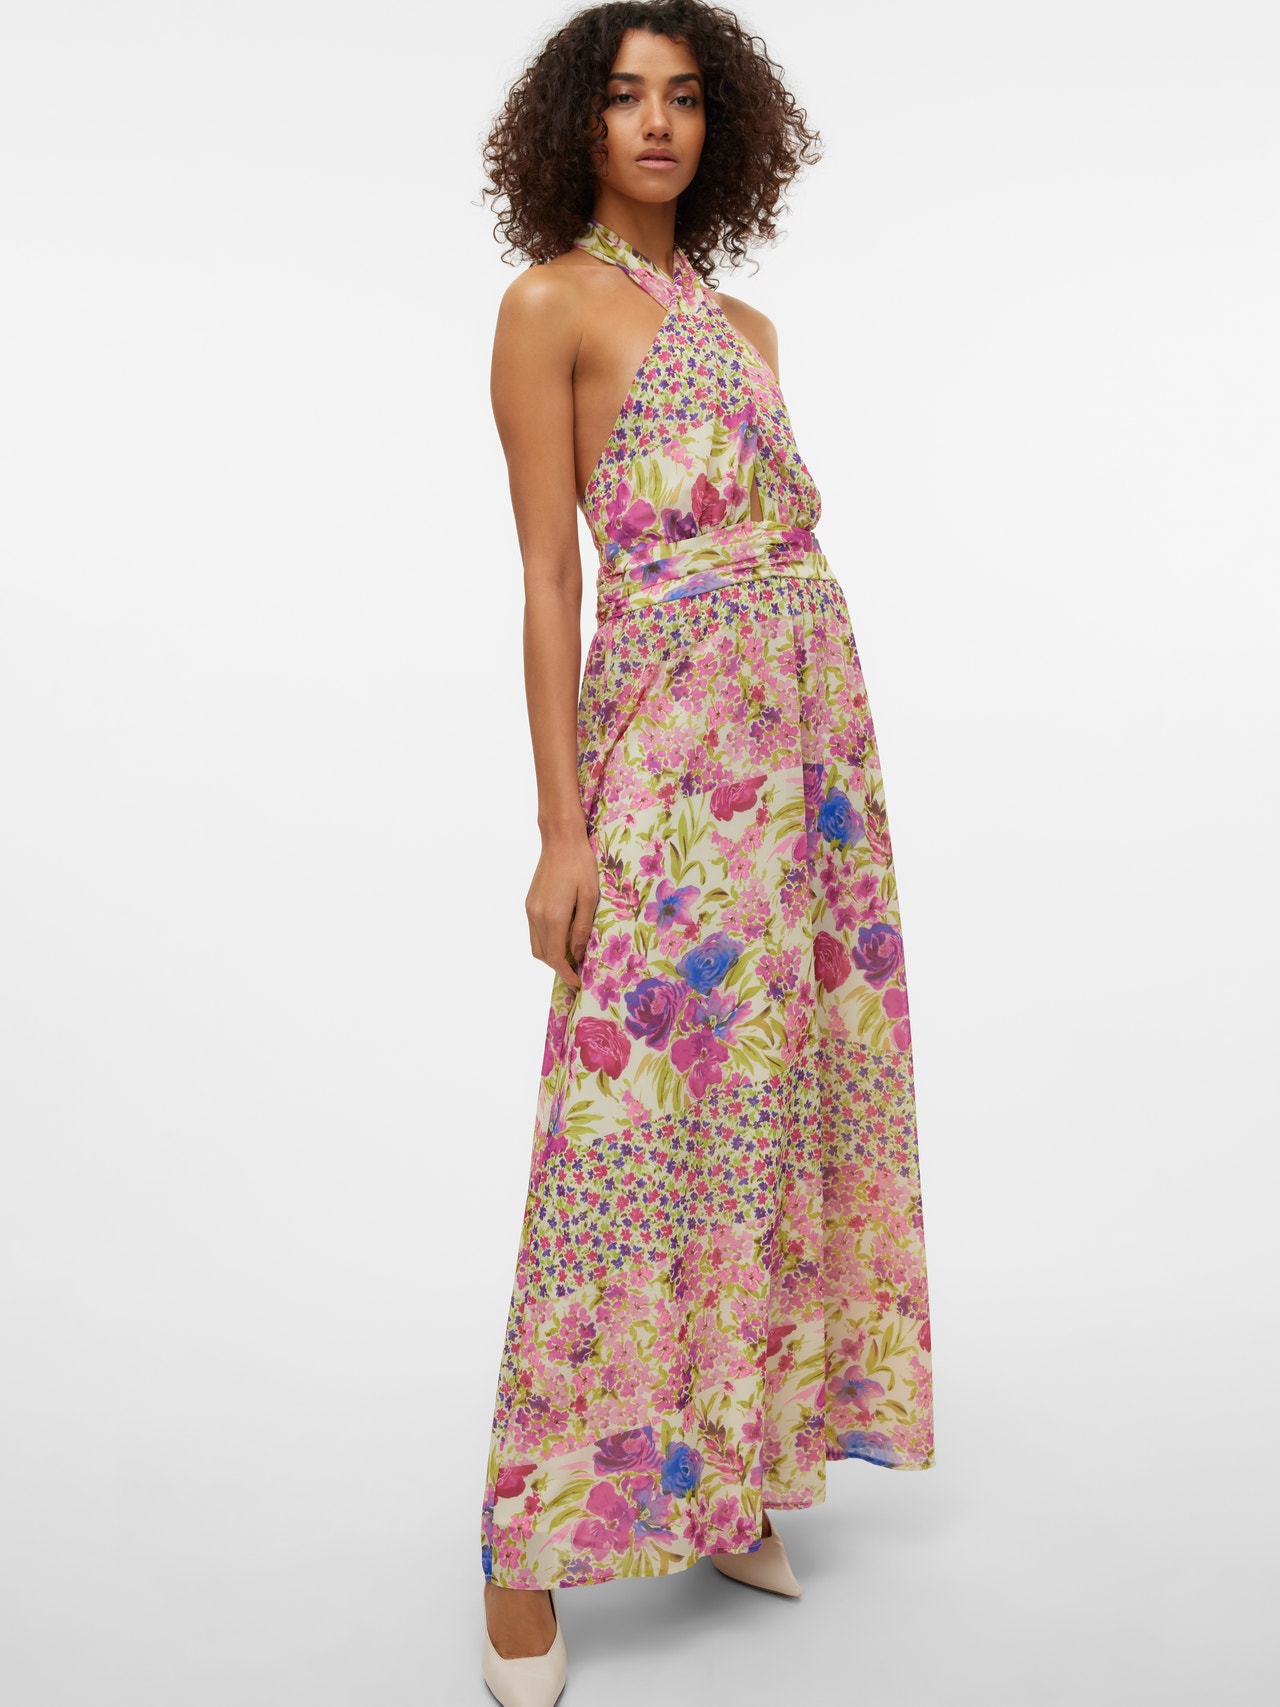 Vero Moda VMBLUEBELLE Long dress -Barely Pink - 10305678